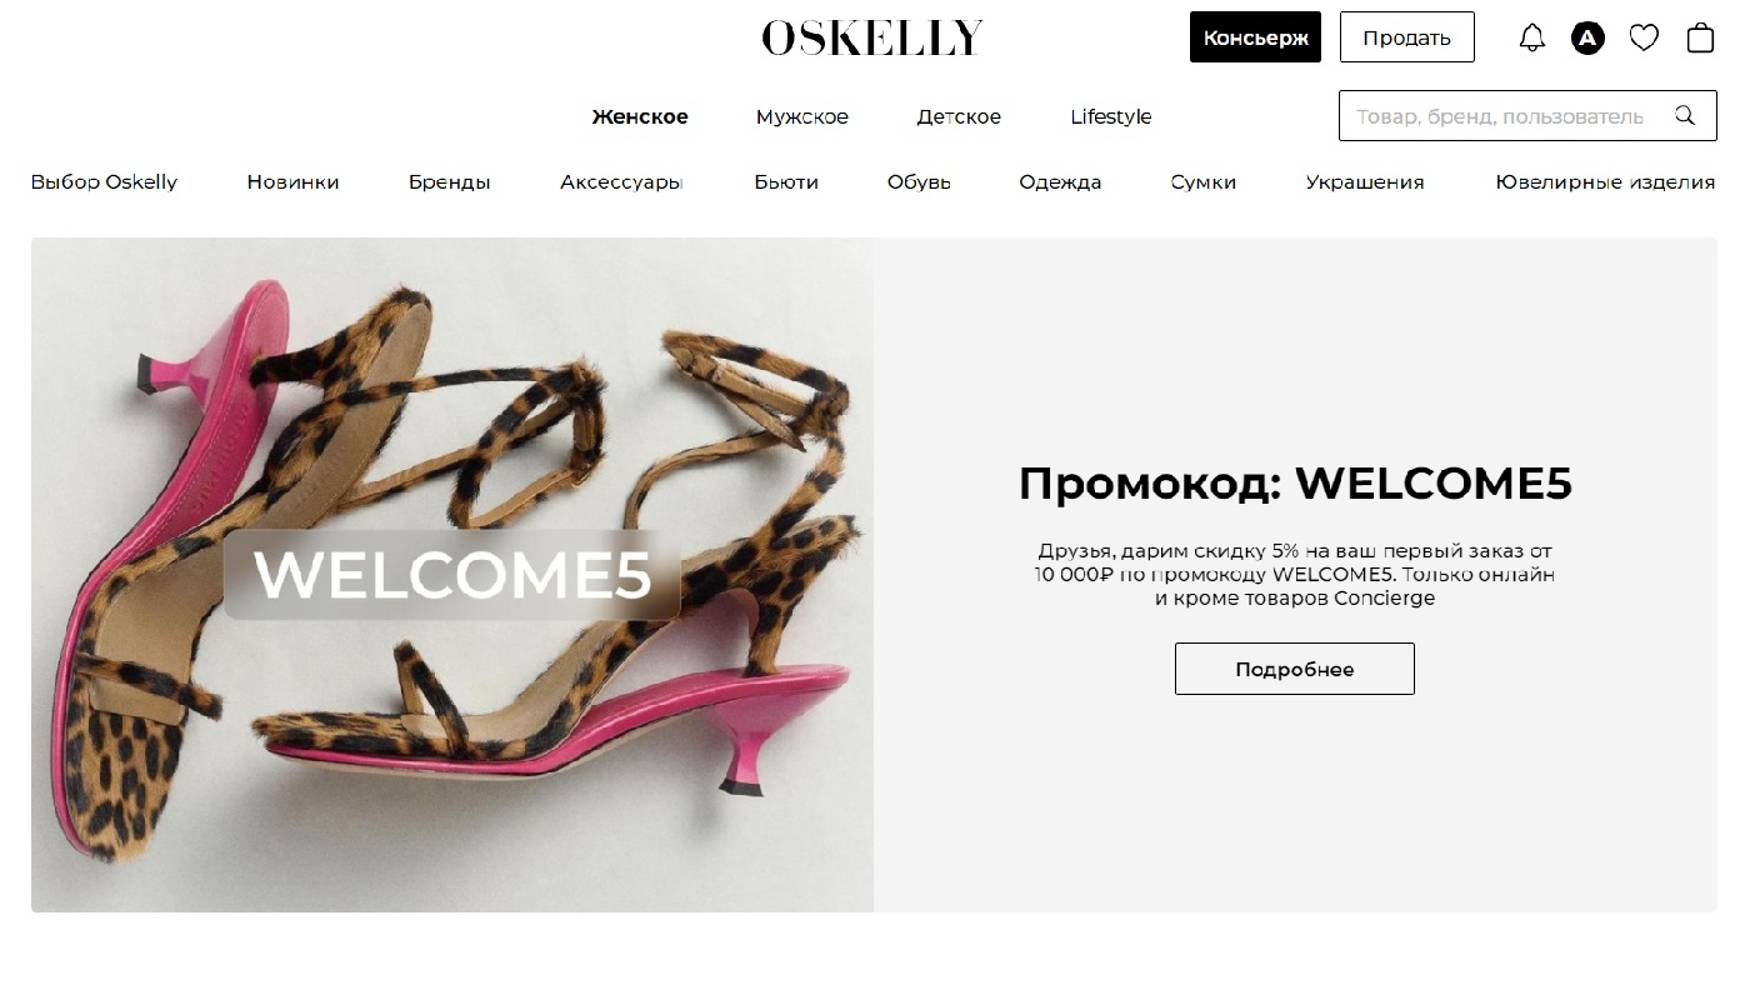 OSKELLY ОТЗЫВ 👀 ПЛАТФОРМА для ПОКУПКИ и ПРОДАЖИ брендовых вещей в России